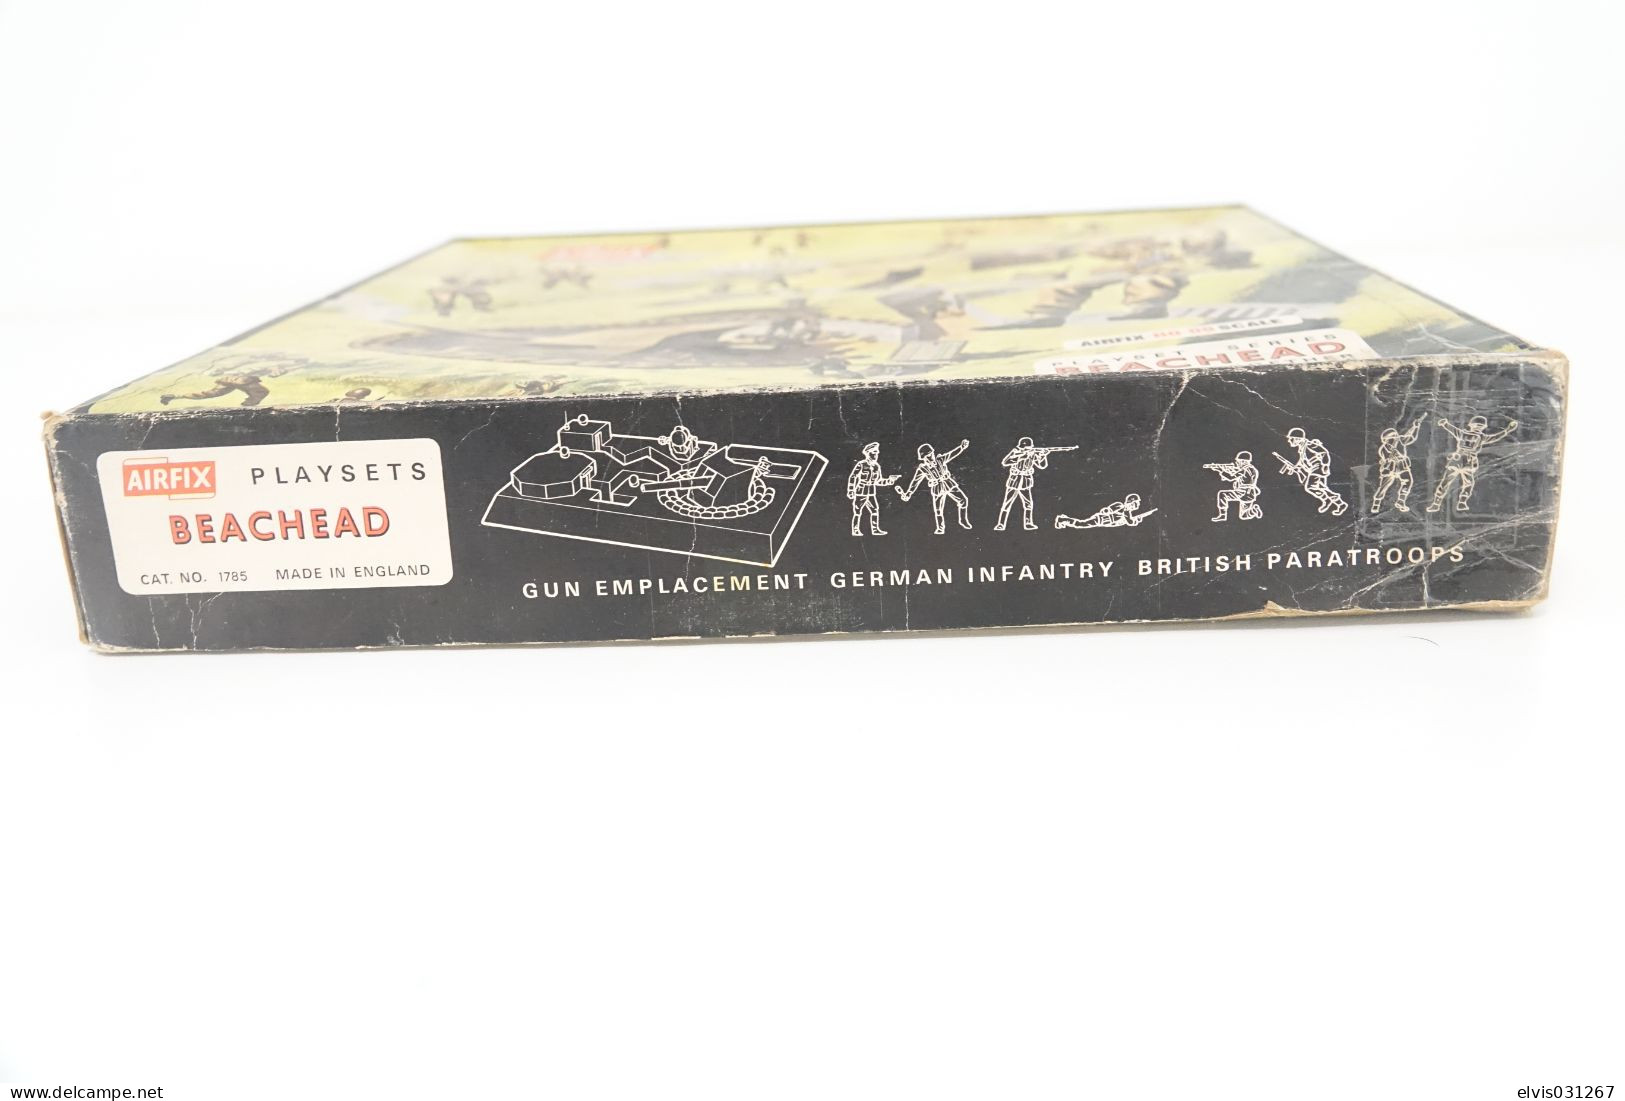 Vintage MODEL KIT : Airfix Beachhead Playset, Scale HO/OO, Vintage - Small Figures